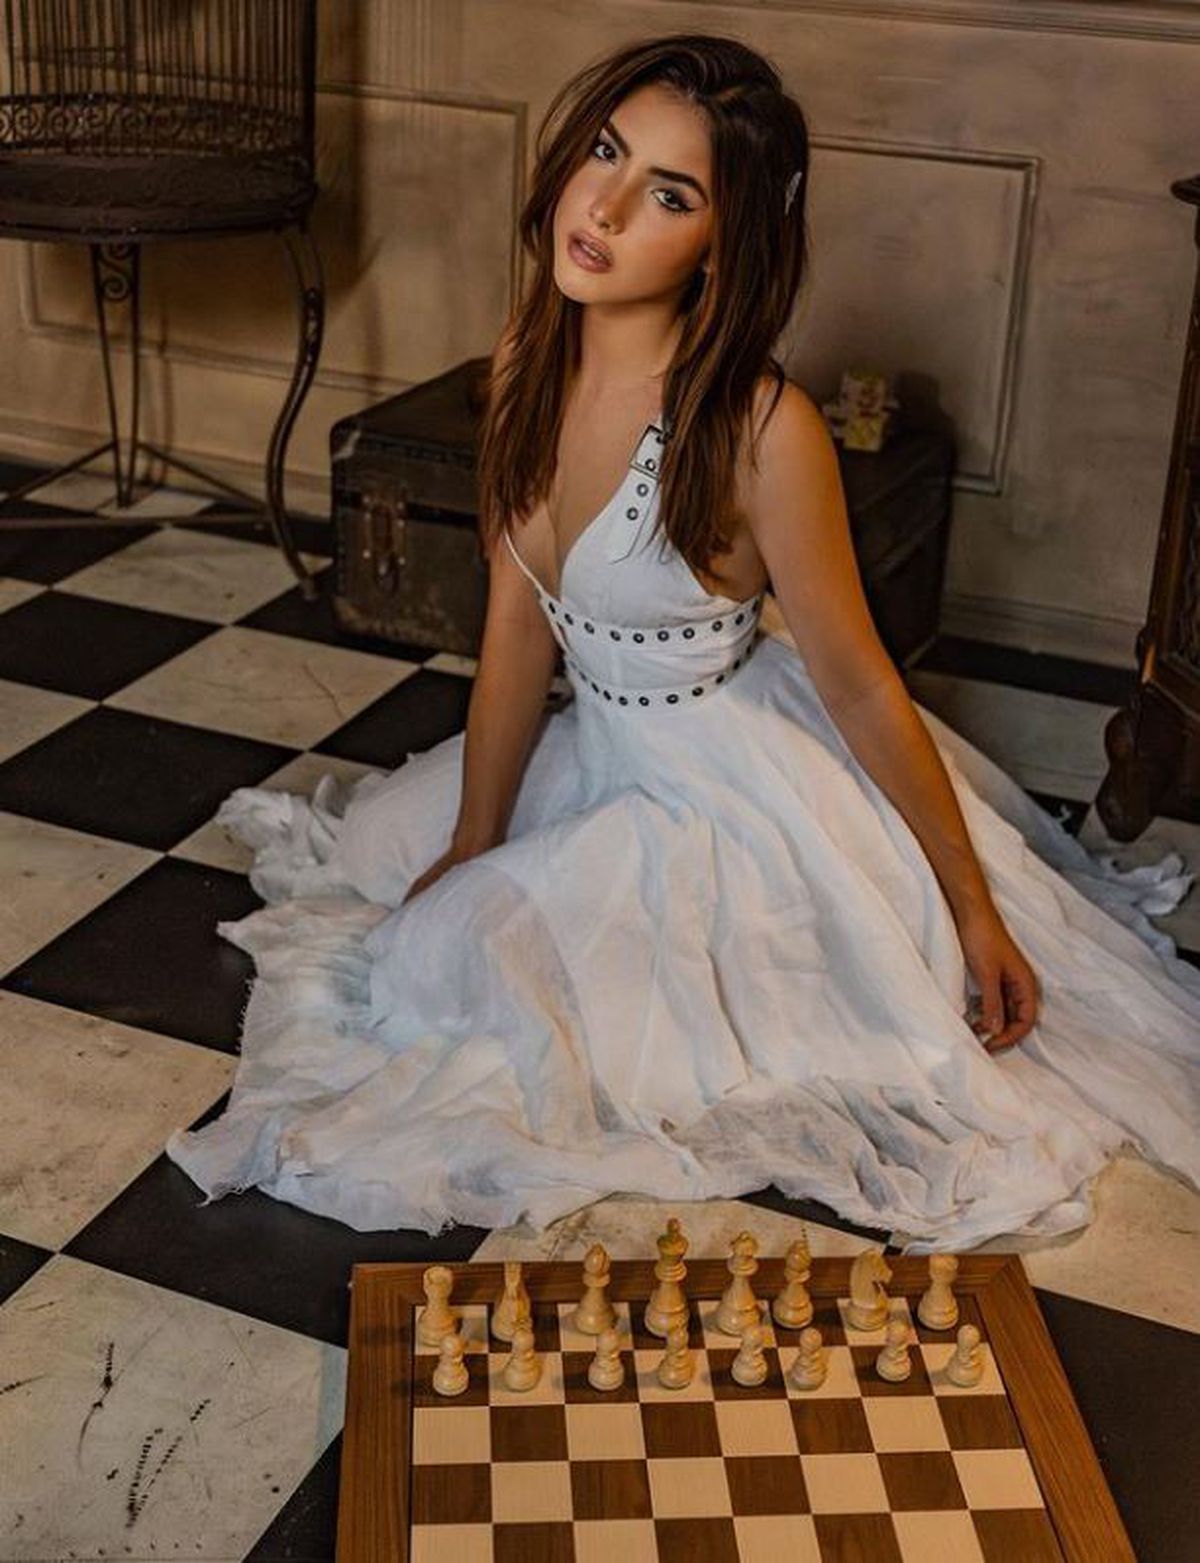 Andrea Botez s-a întors în competițiile majore de șah, dar a fost învinsă de un băiat de 11 ani: „Mi-a luat o săptămână să-mi revin”